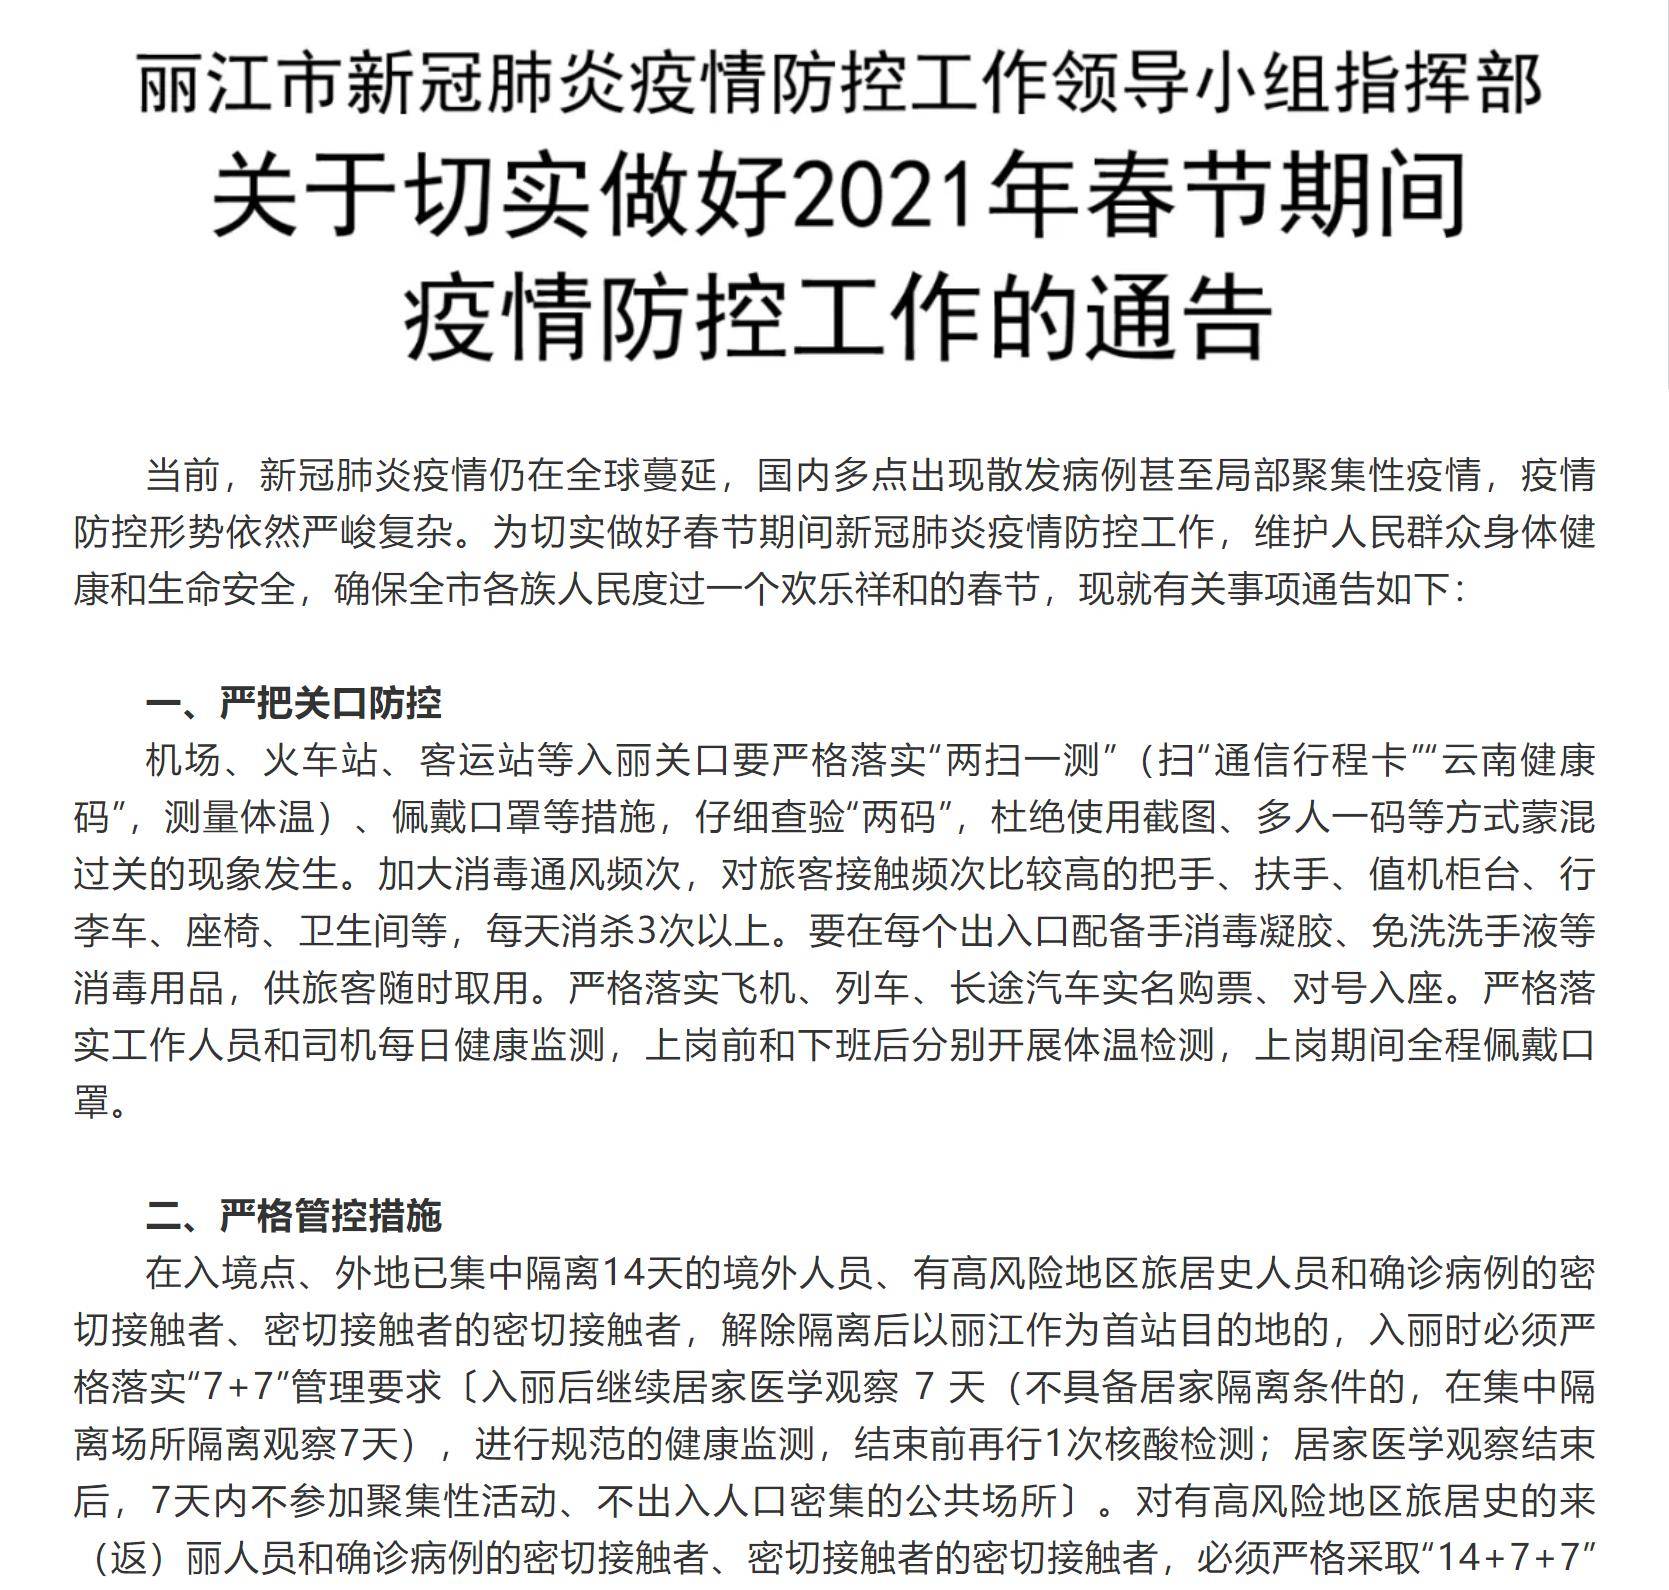 云南省外低风险地区人员进入丽江仍需持有7日内核酸检测阴性证明